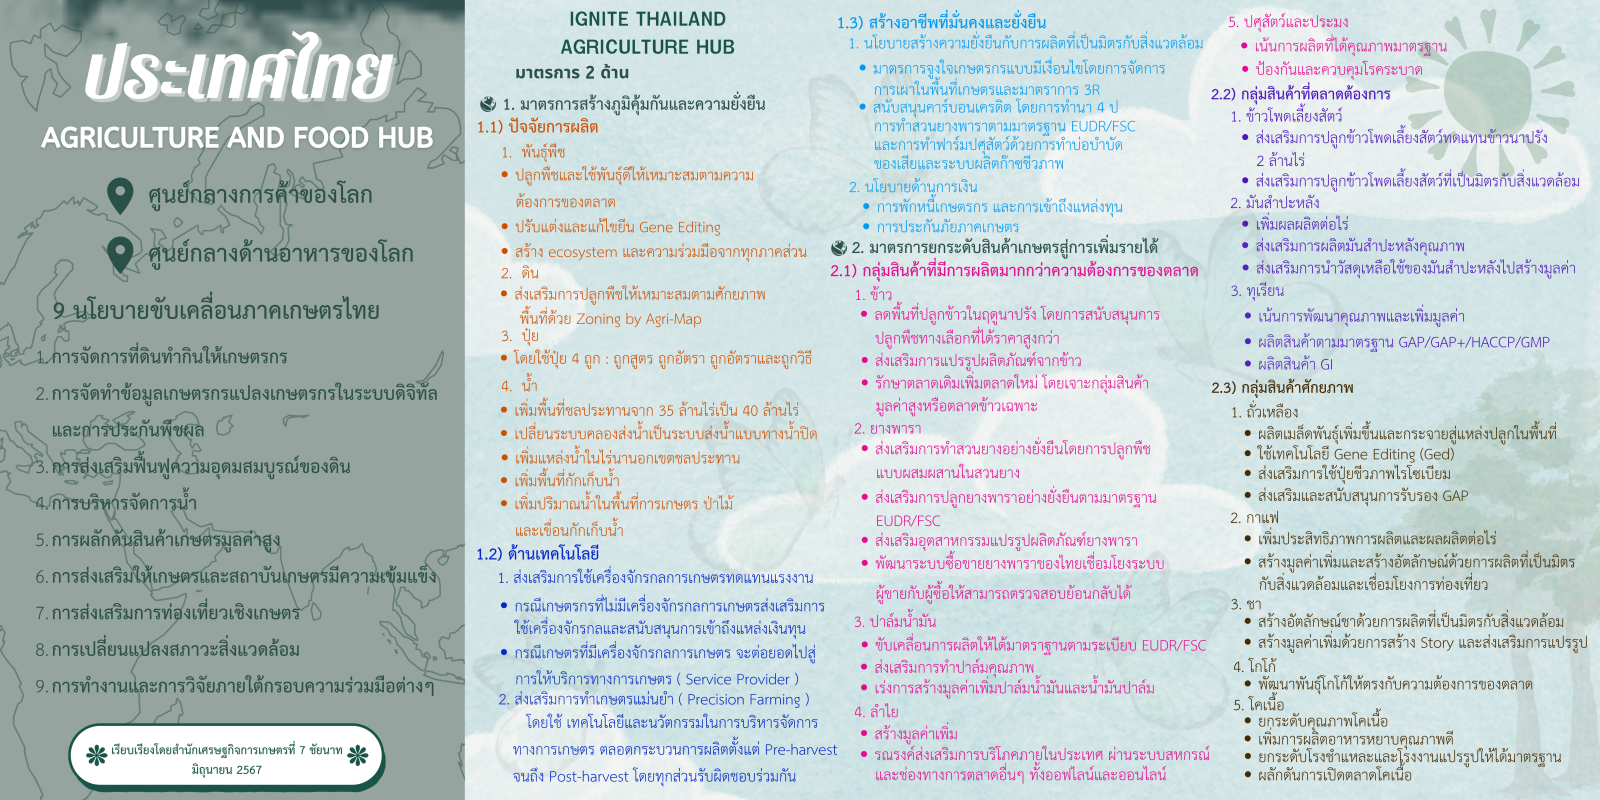 ประเทศไทย AGRICULTURE AND FOOD HUB